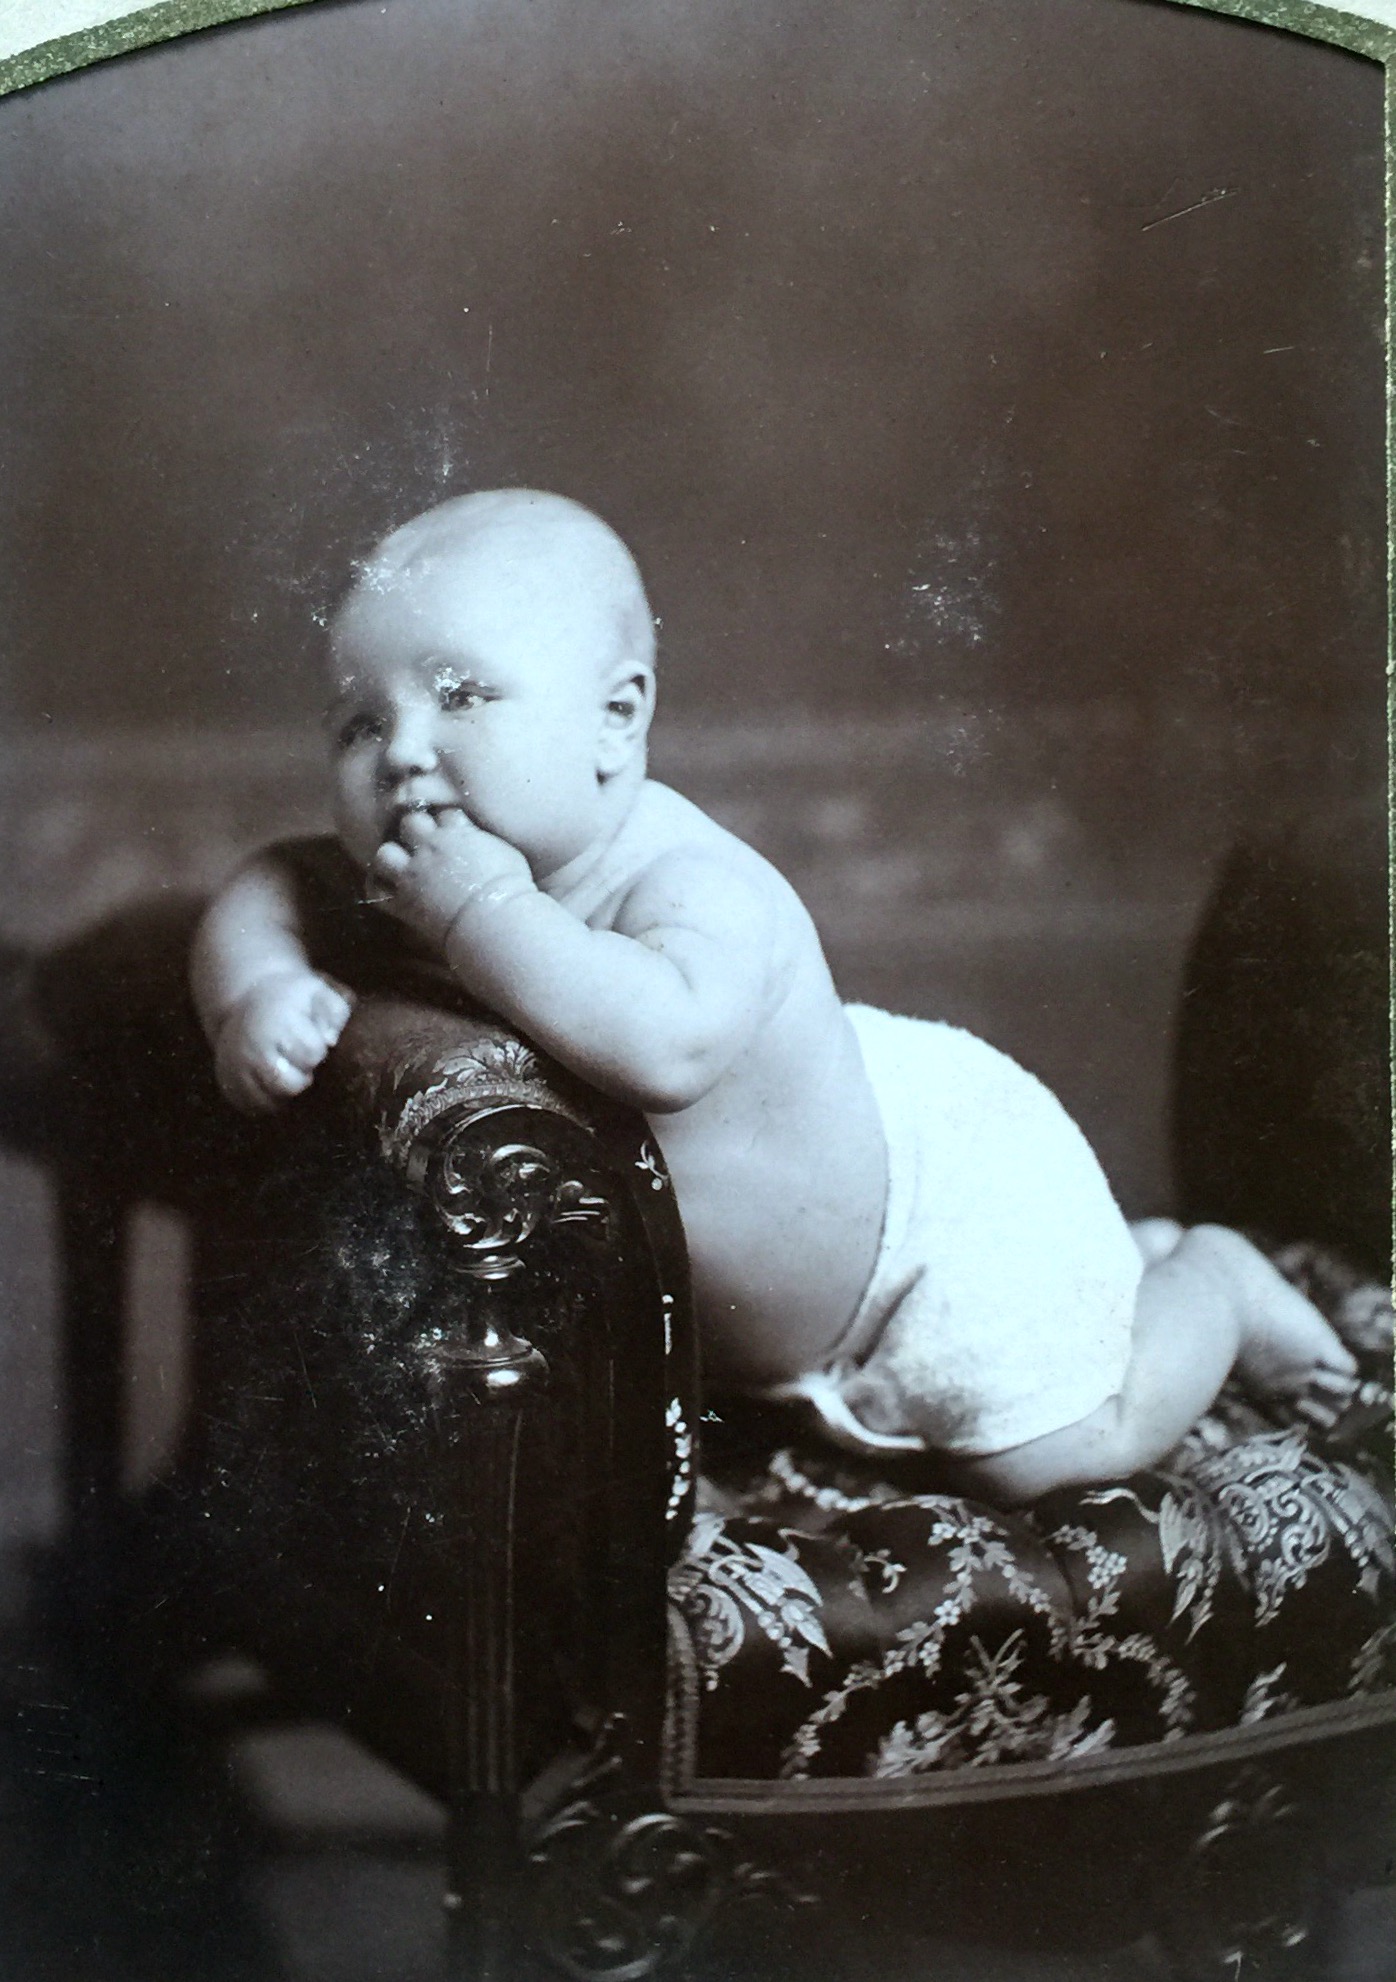 Uncle Jim as baby. Born November 1901